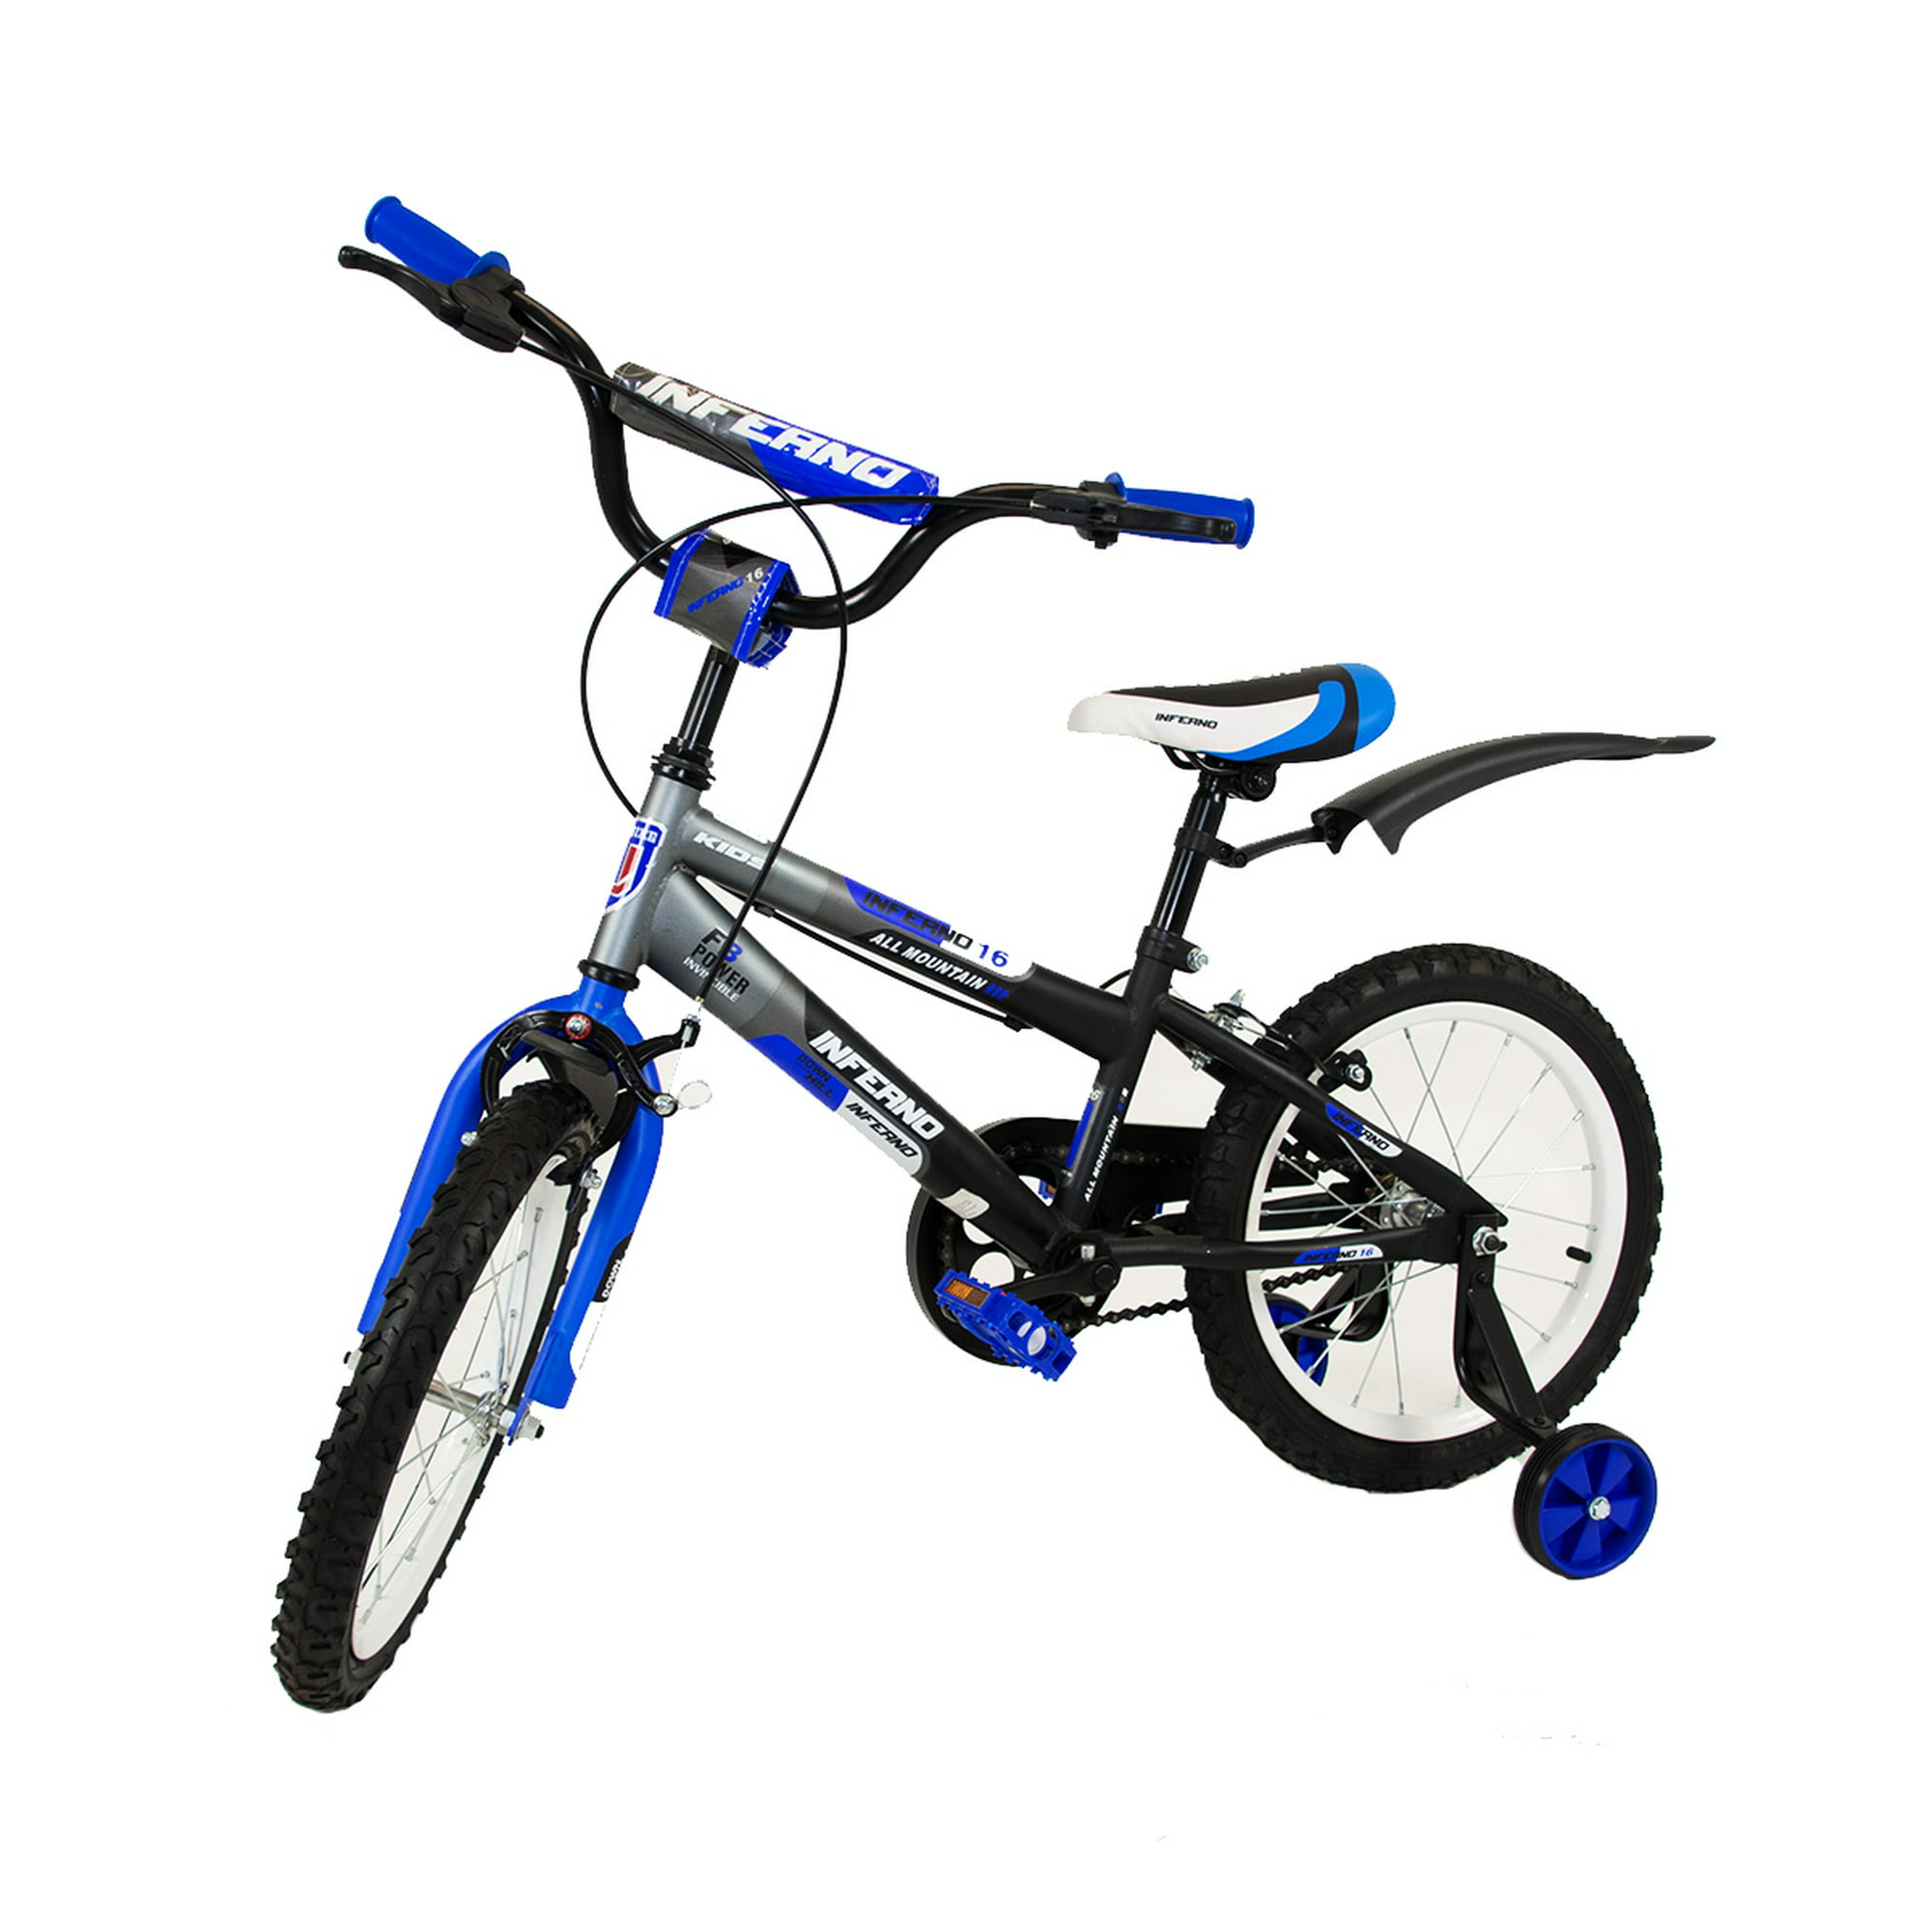 Bicicleta para niño de 5 a 10 años, Rodada 16, Azul-Gris, con rueditas de  entrenamiento. Unibike Inferno Urbana